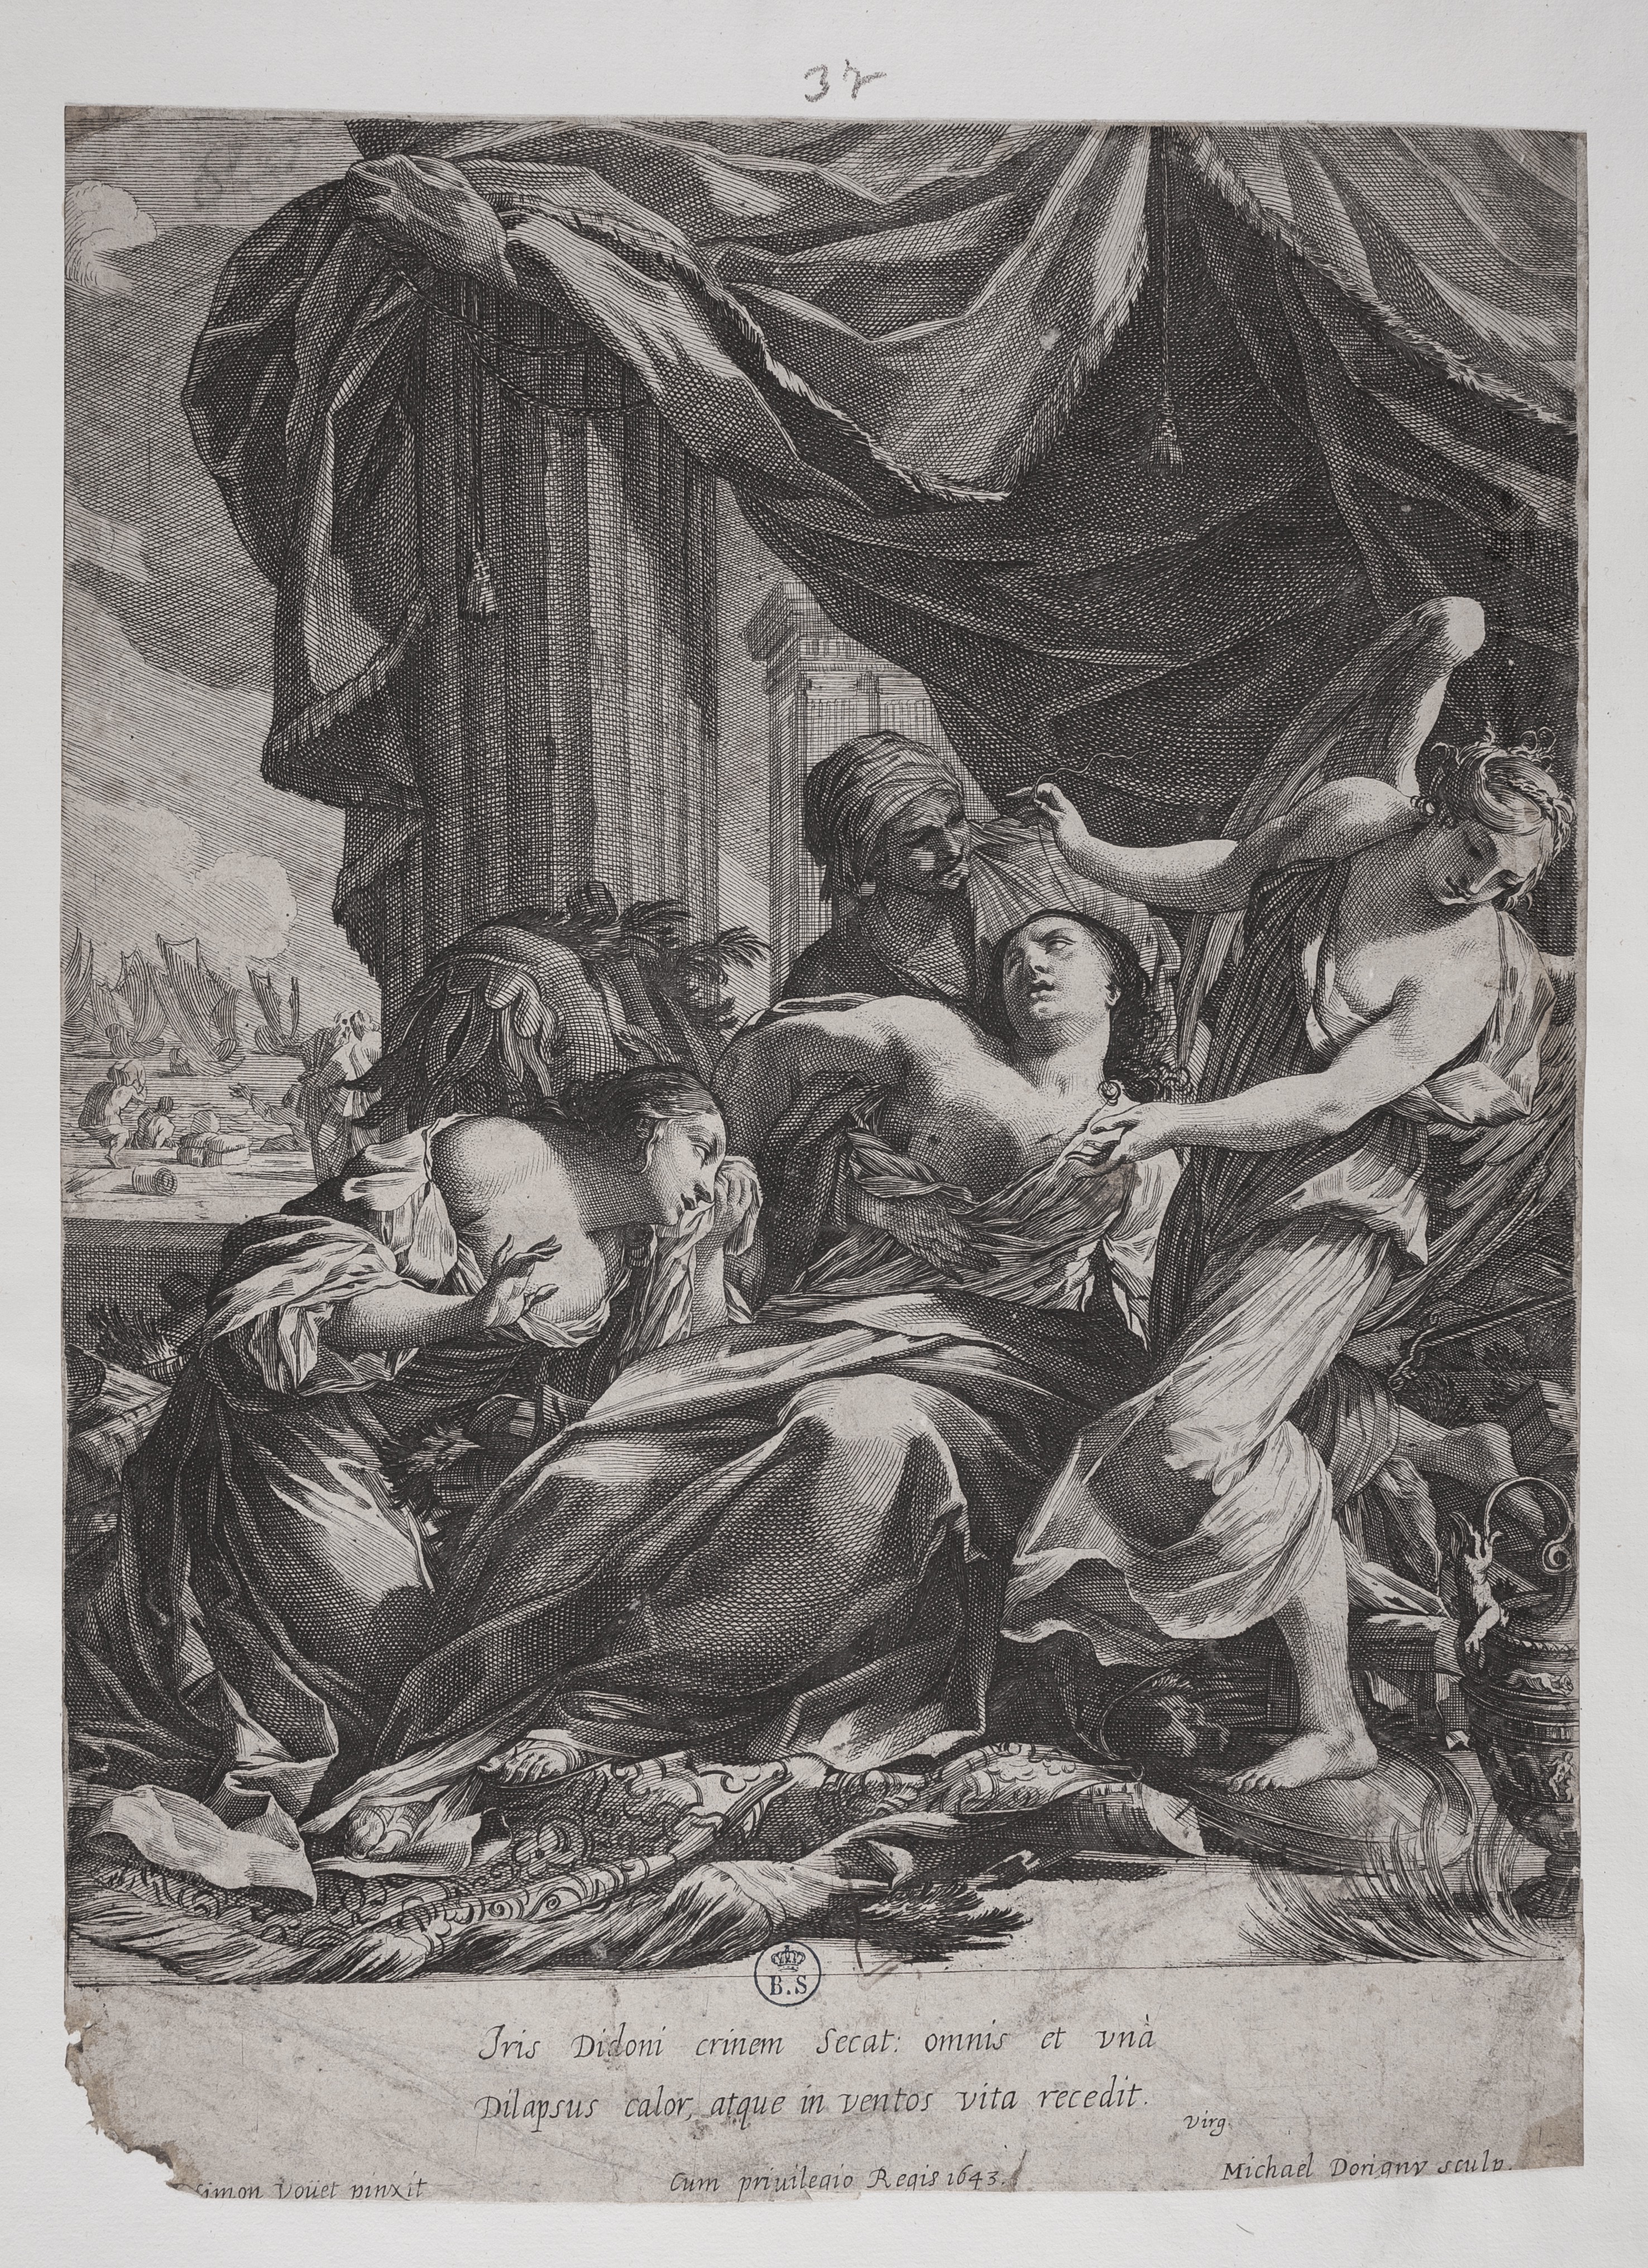 La morte di Didone, La morte di Didone (stampa controfondata smarginata tagliata) di Simon Vouet, Dorigny Michel (secondo quarto XVII)